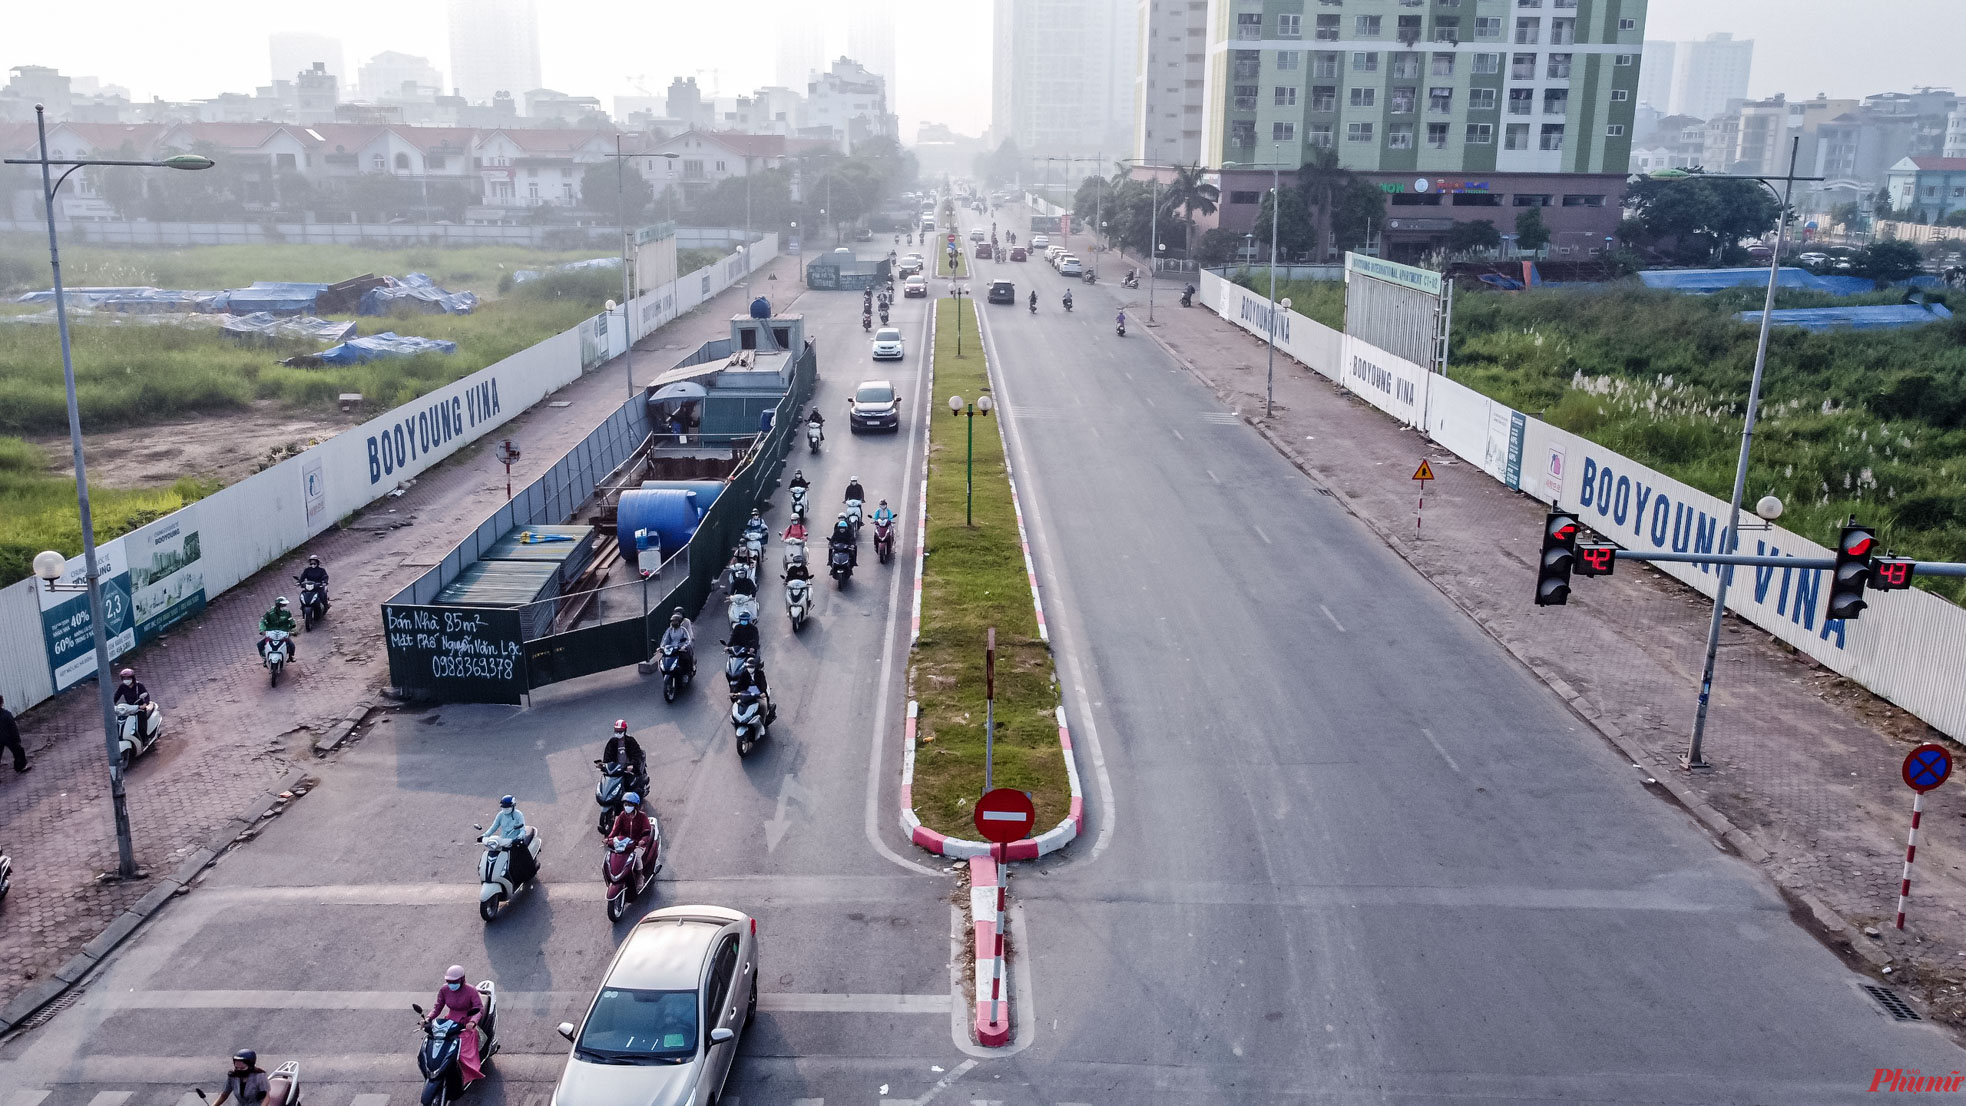 Theo ghi nhận của PV, tuyến đường Vũ Trọng Khánh, đoạn từ nút giao Mộ Lao - Vũ Trọng Khánh đến đầu cầu Mộ Lao, chỉ dài 300m nhưng đang có 9 chiếc “lô cốt”  đang án ngữ đường đi của người dân.